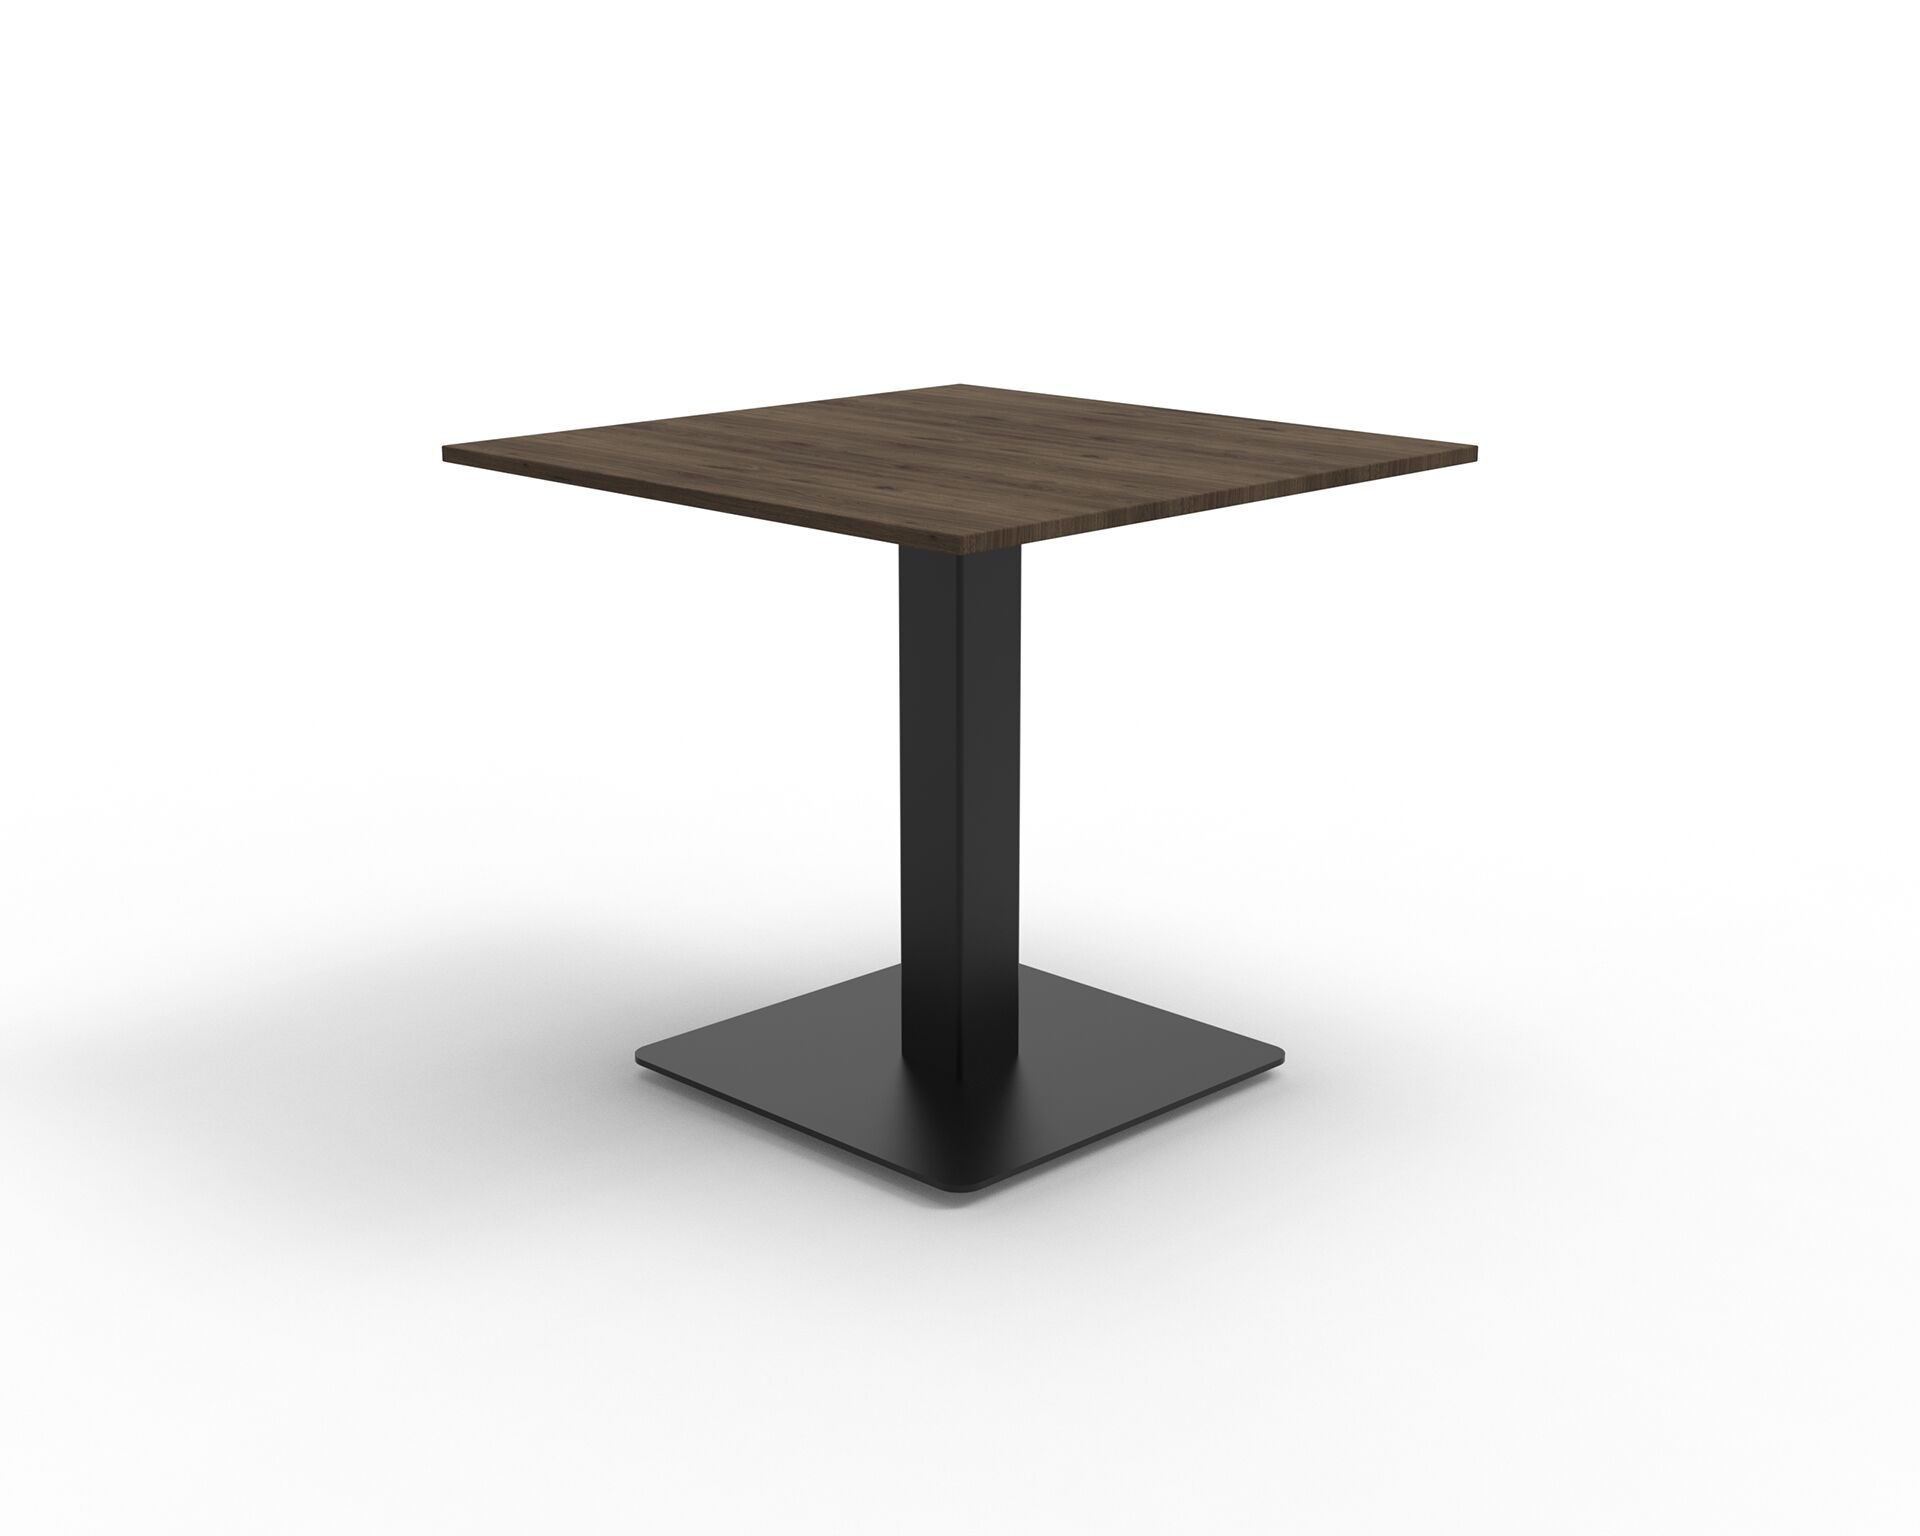 Czarna metalowa prosta podstawa kwadratowa do stołu z ciemno drewnianym kwadratowym blatem B10 B-Group